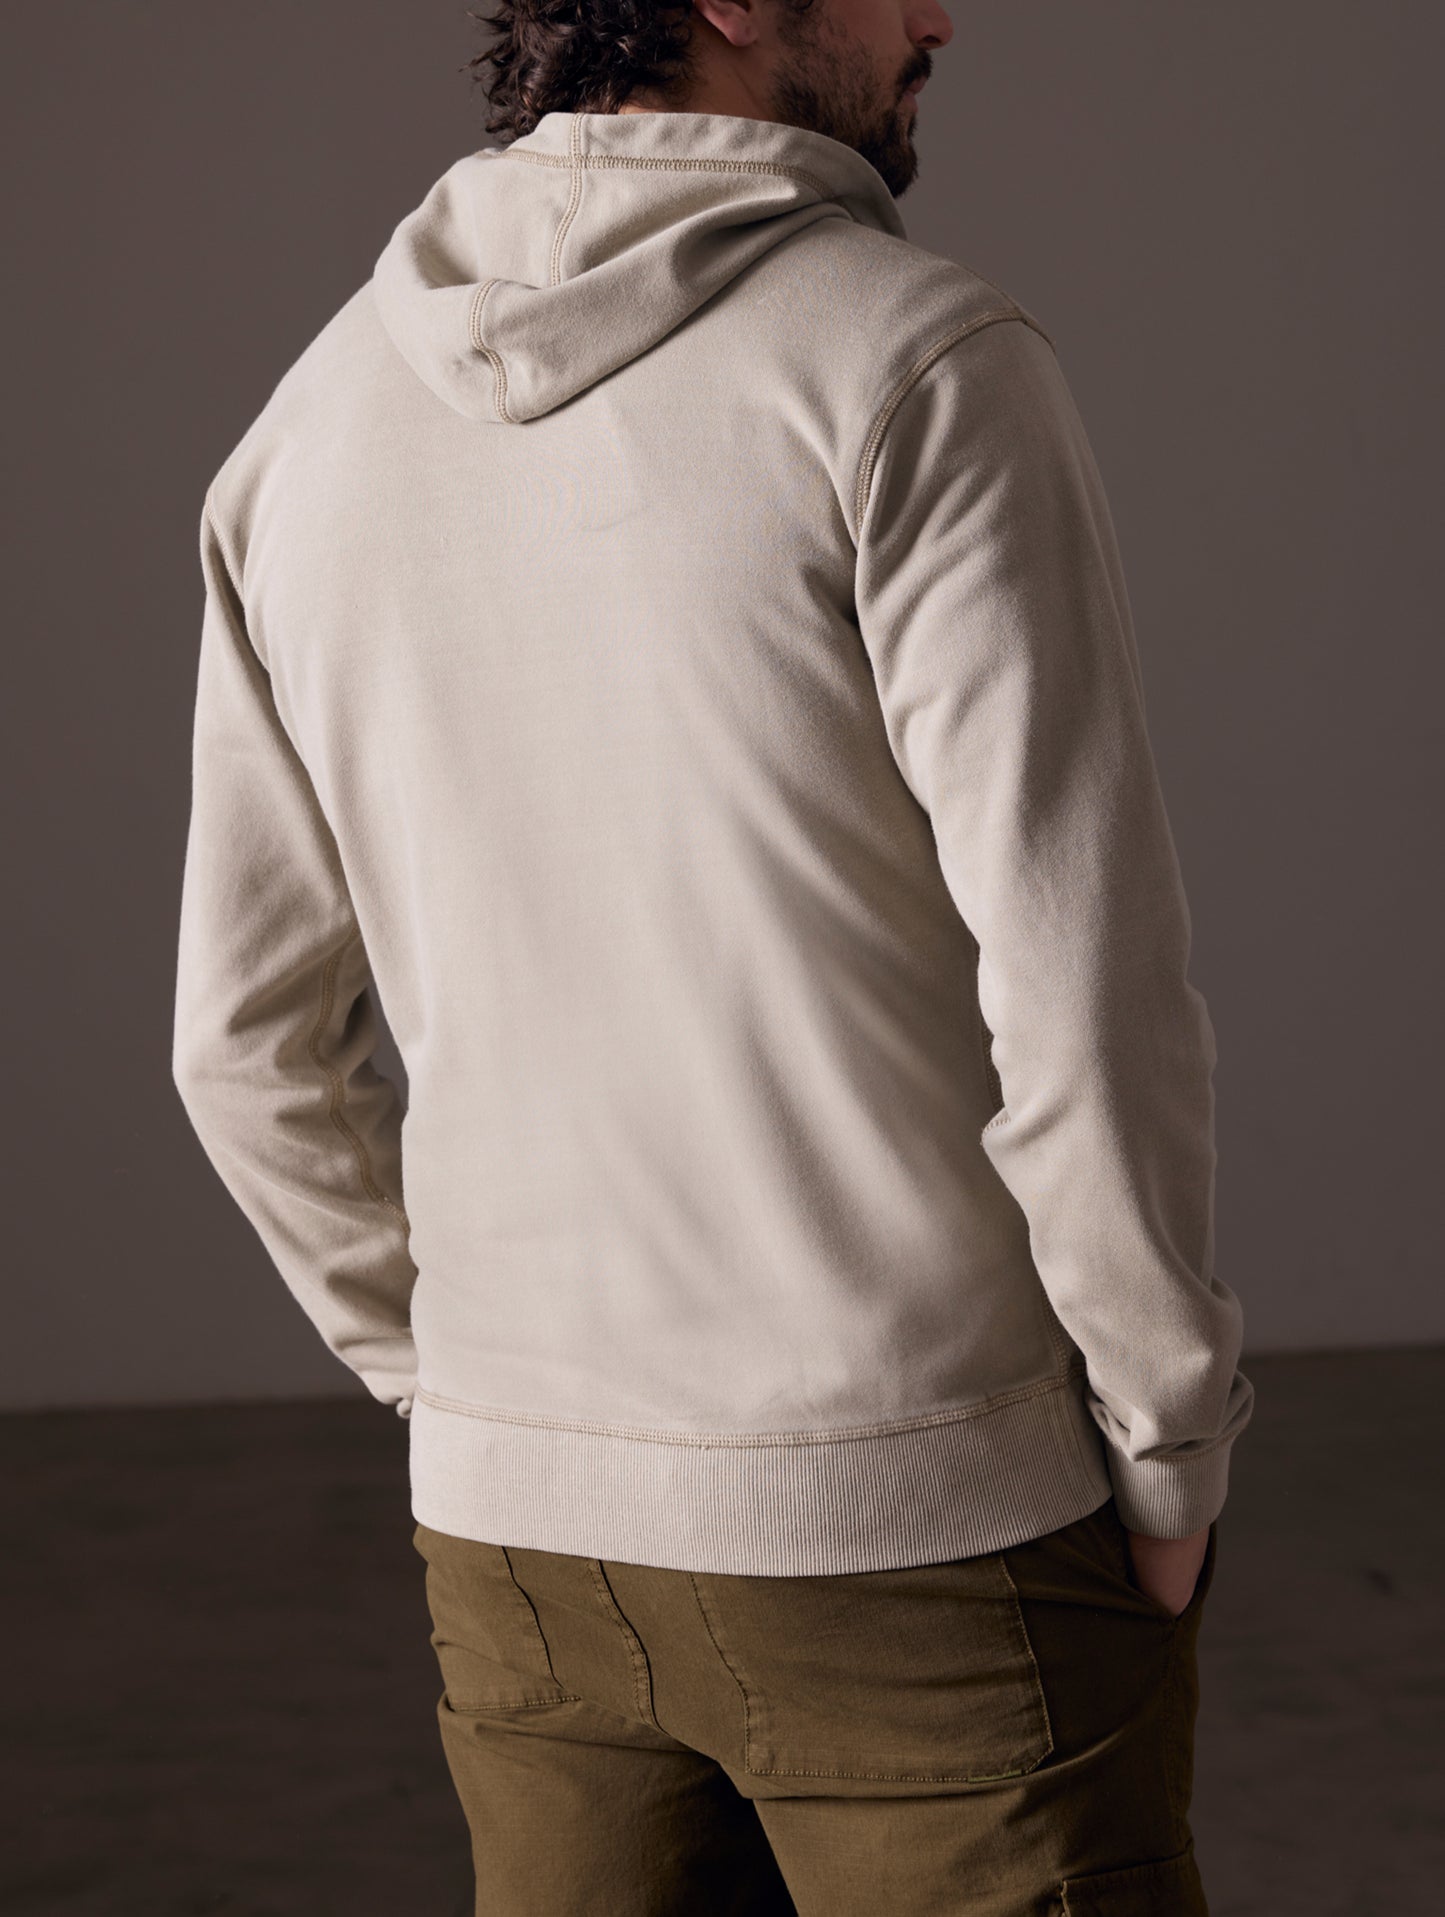 Back view of man wearing full-zip hoodie